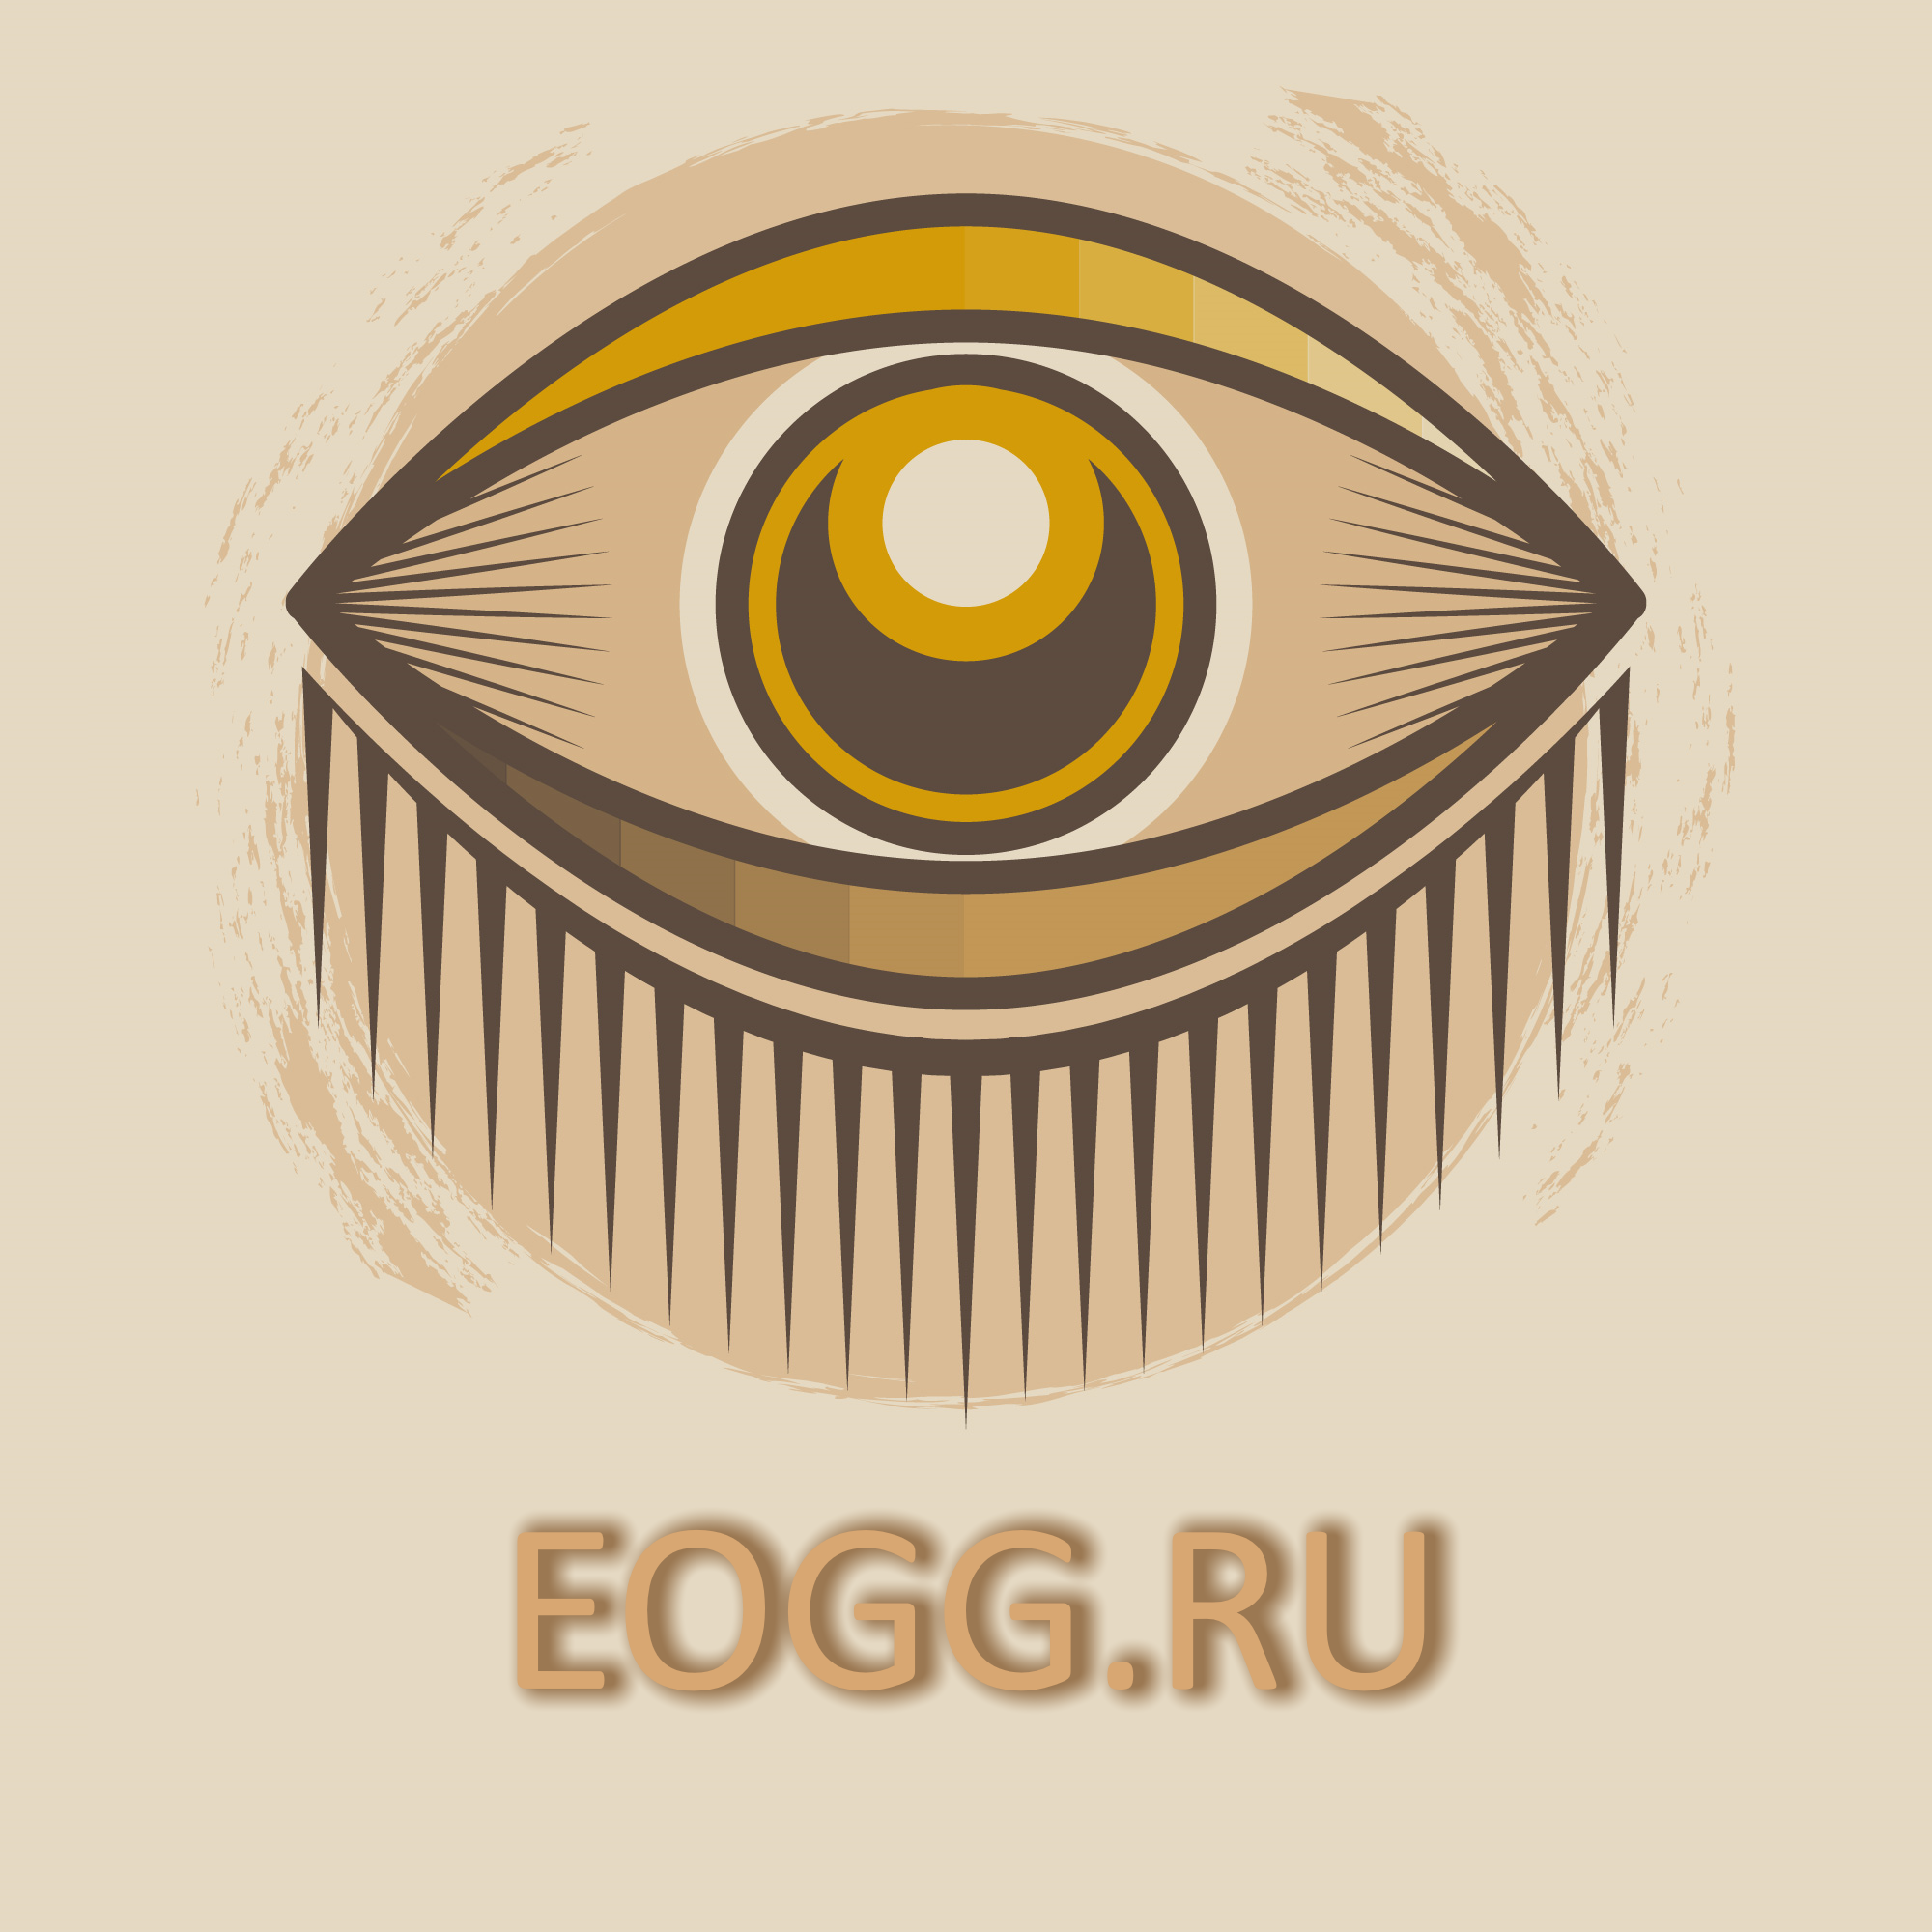 Глаз Бога — это уникальная мультиплатформенная система поиска информации.